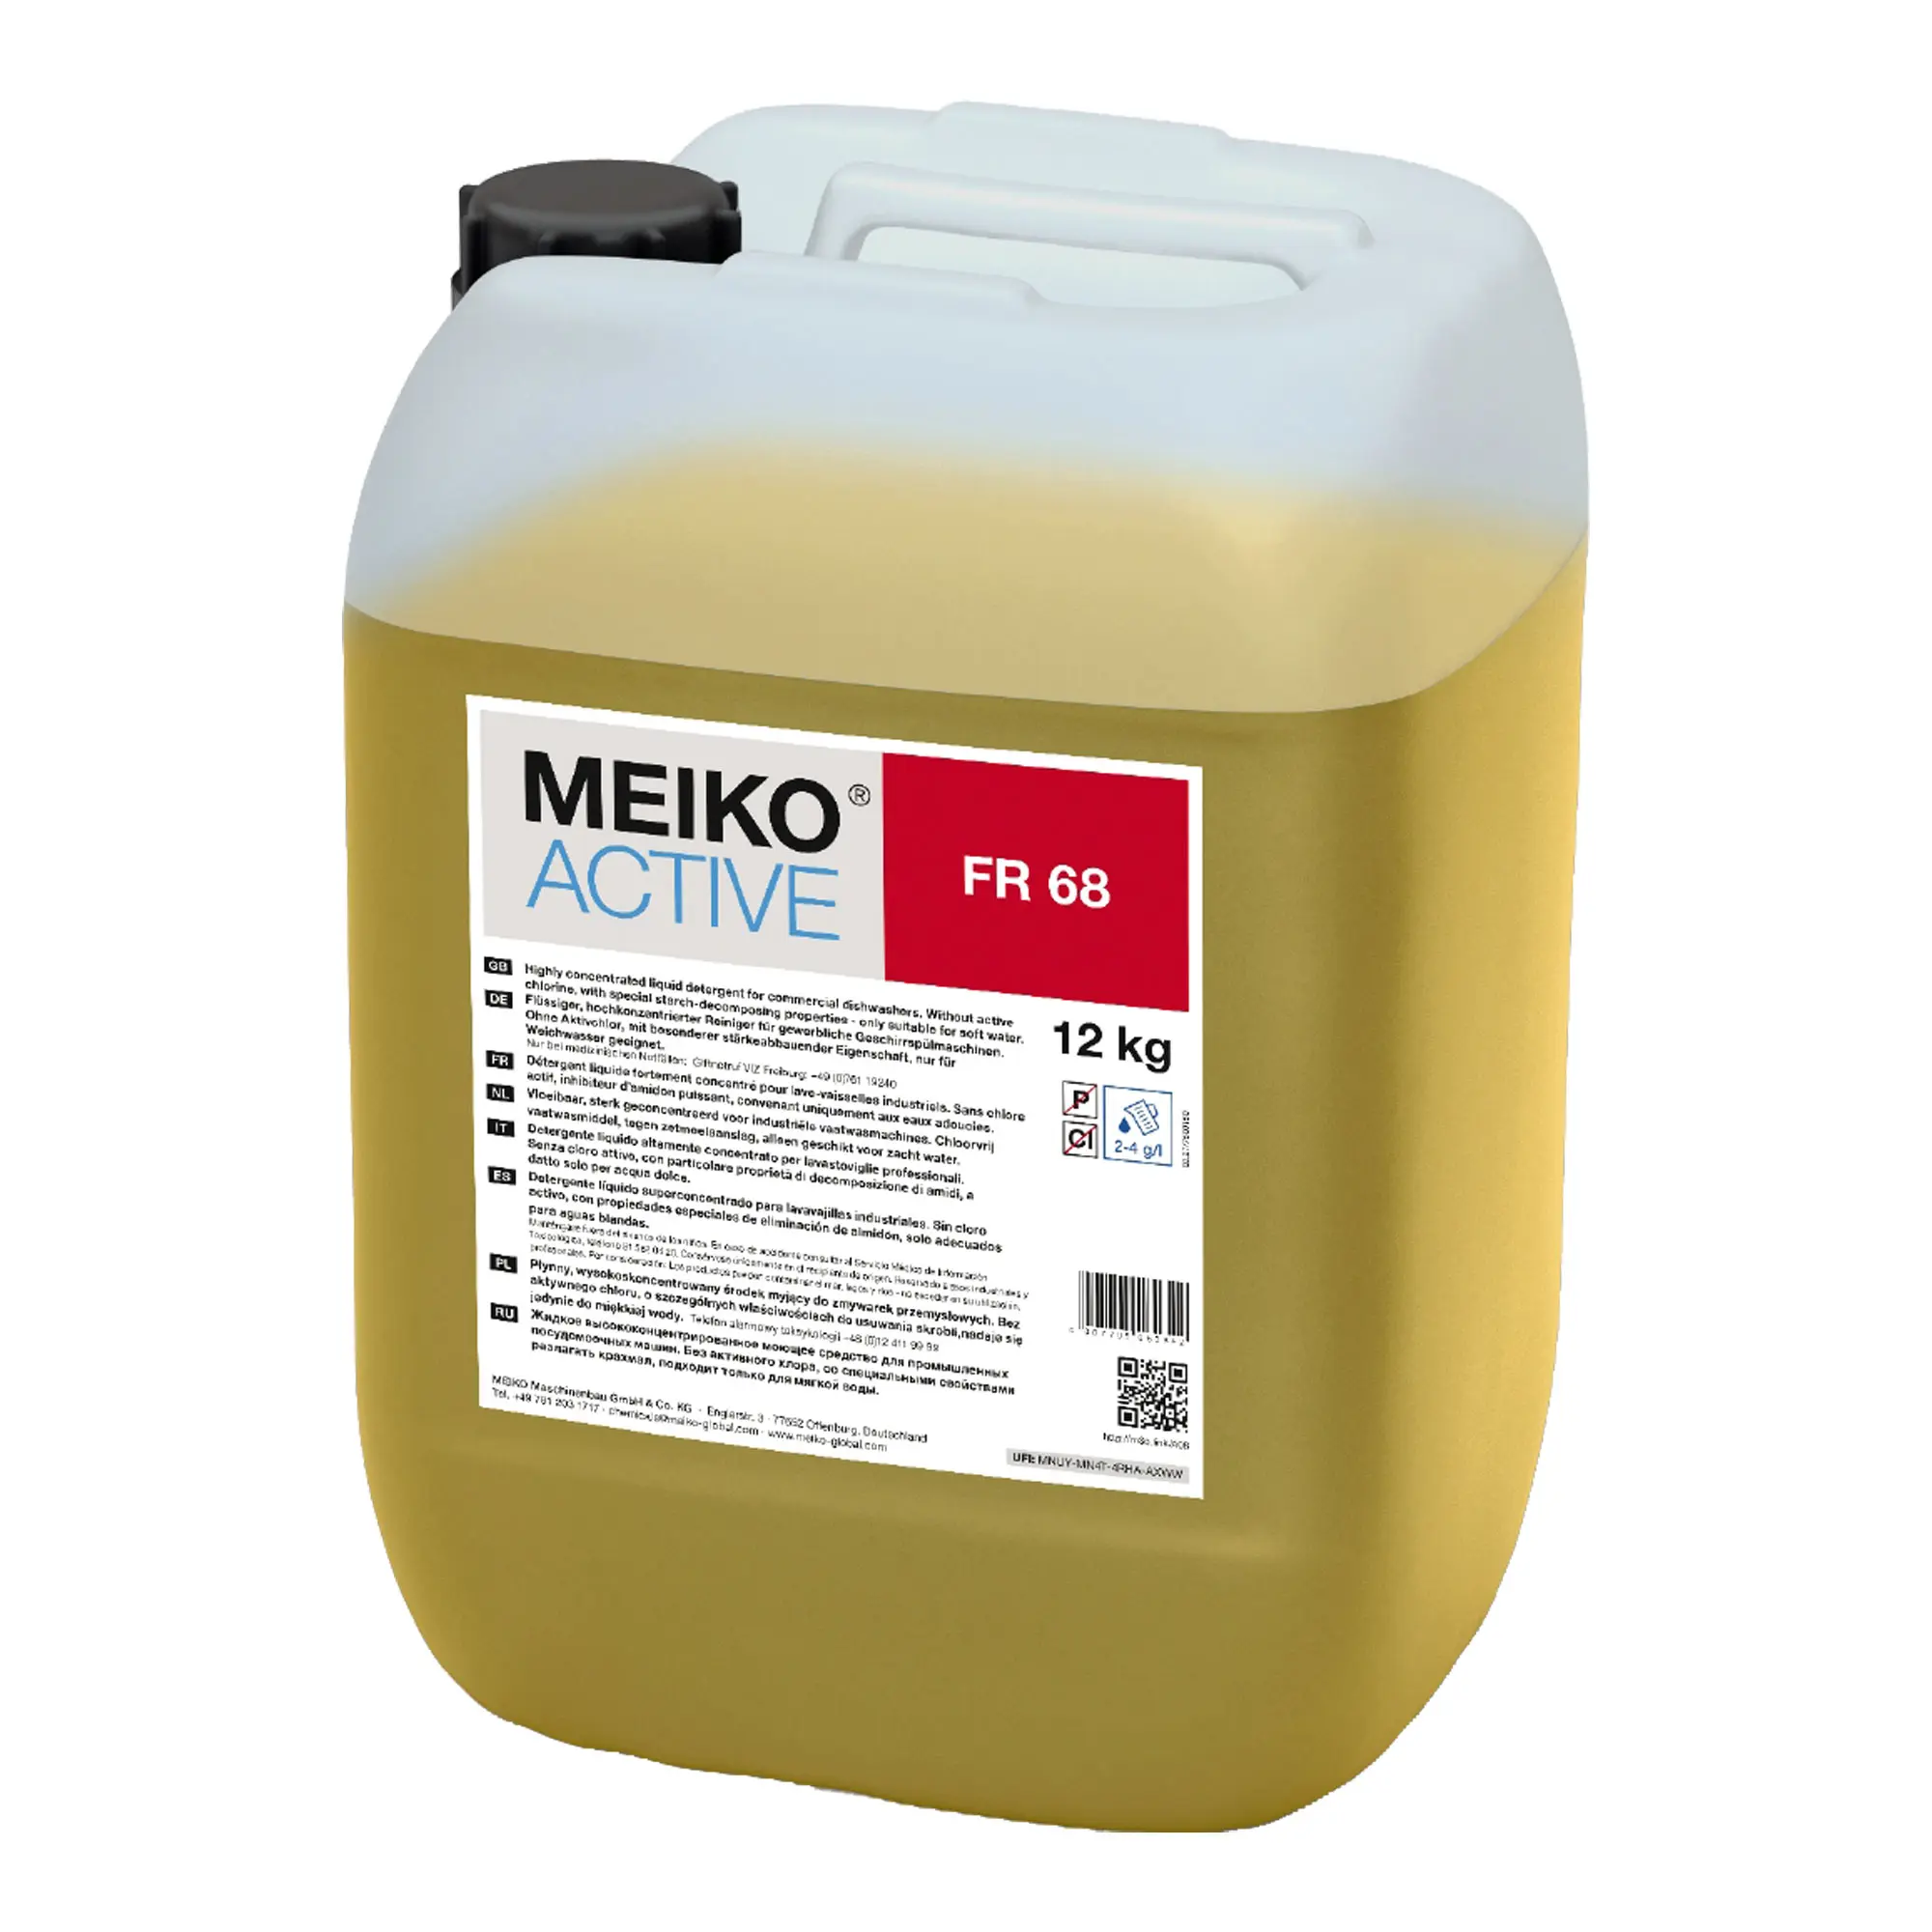 Meiko Active FR 68 flüssiger Spezialreiniger bei Stärkeaufbau